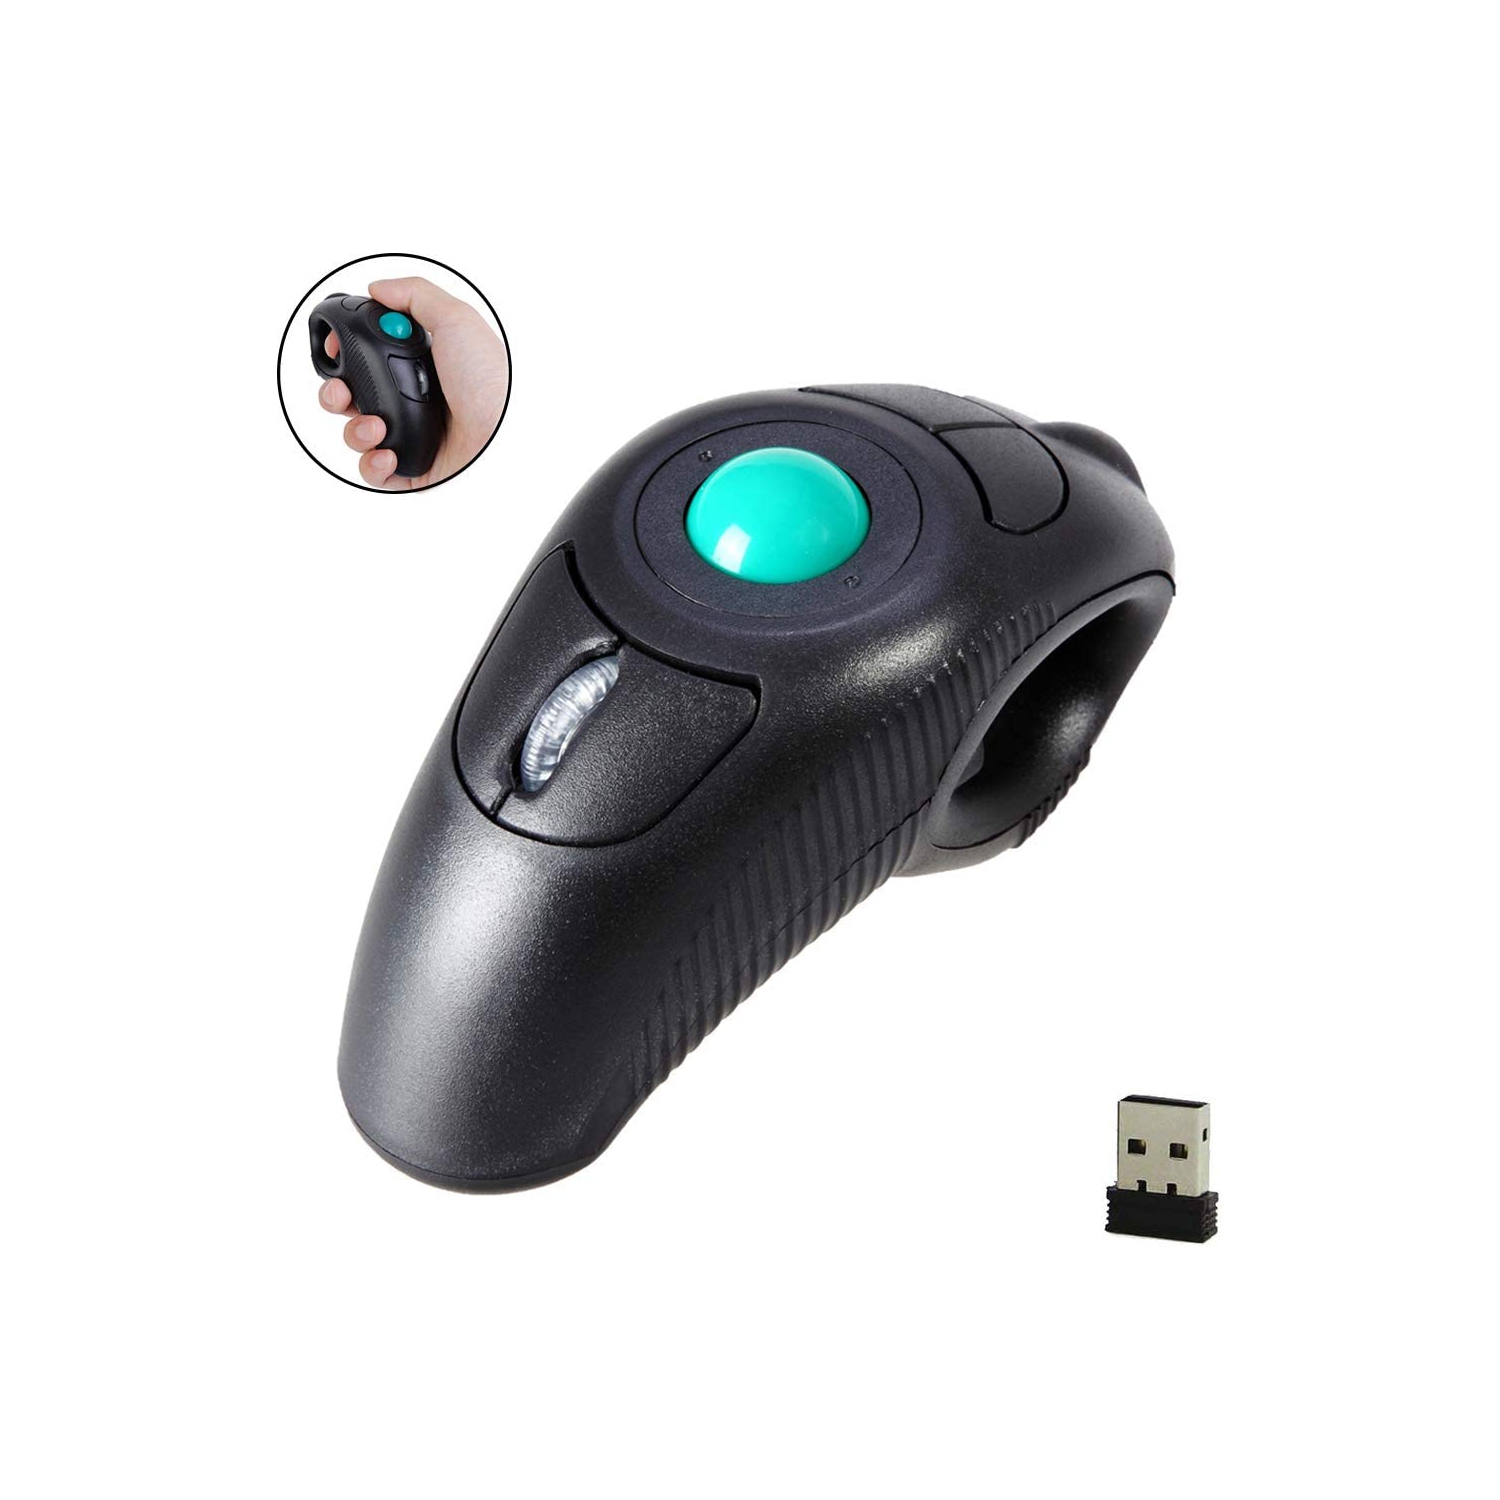 2.4G Ergonomic Trackball Handheld Finger USB Mouse Wireless Travel DPI Mice for PC Laptop Mac Left